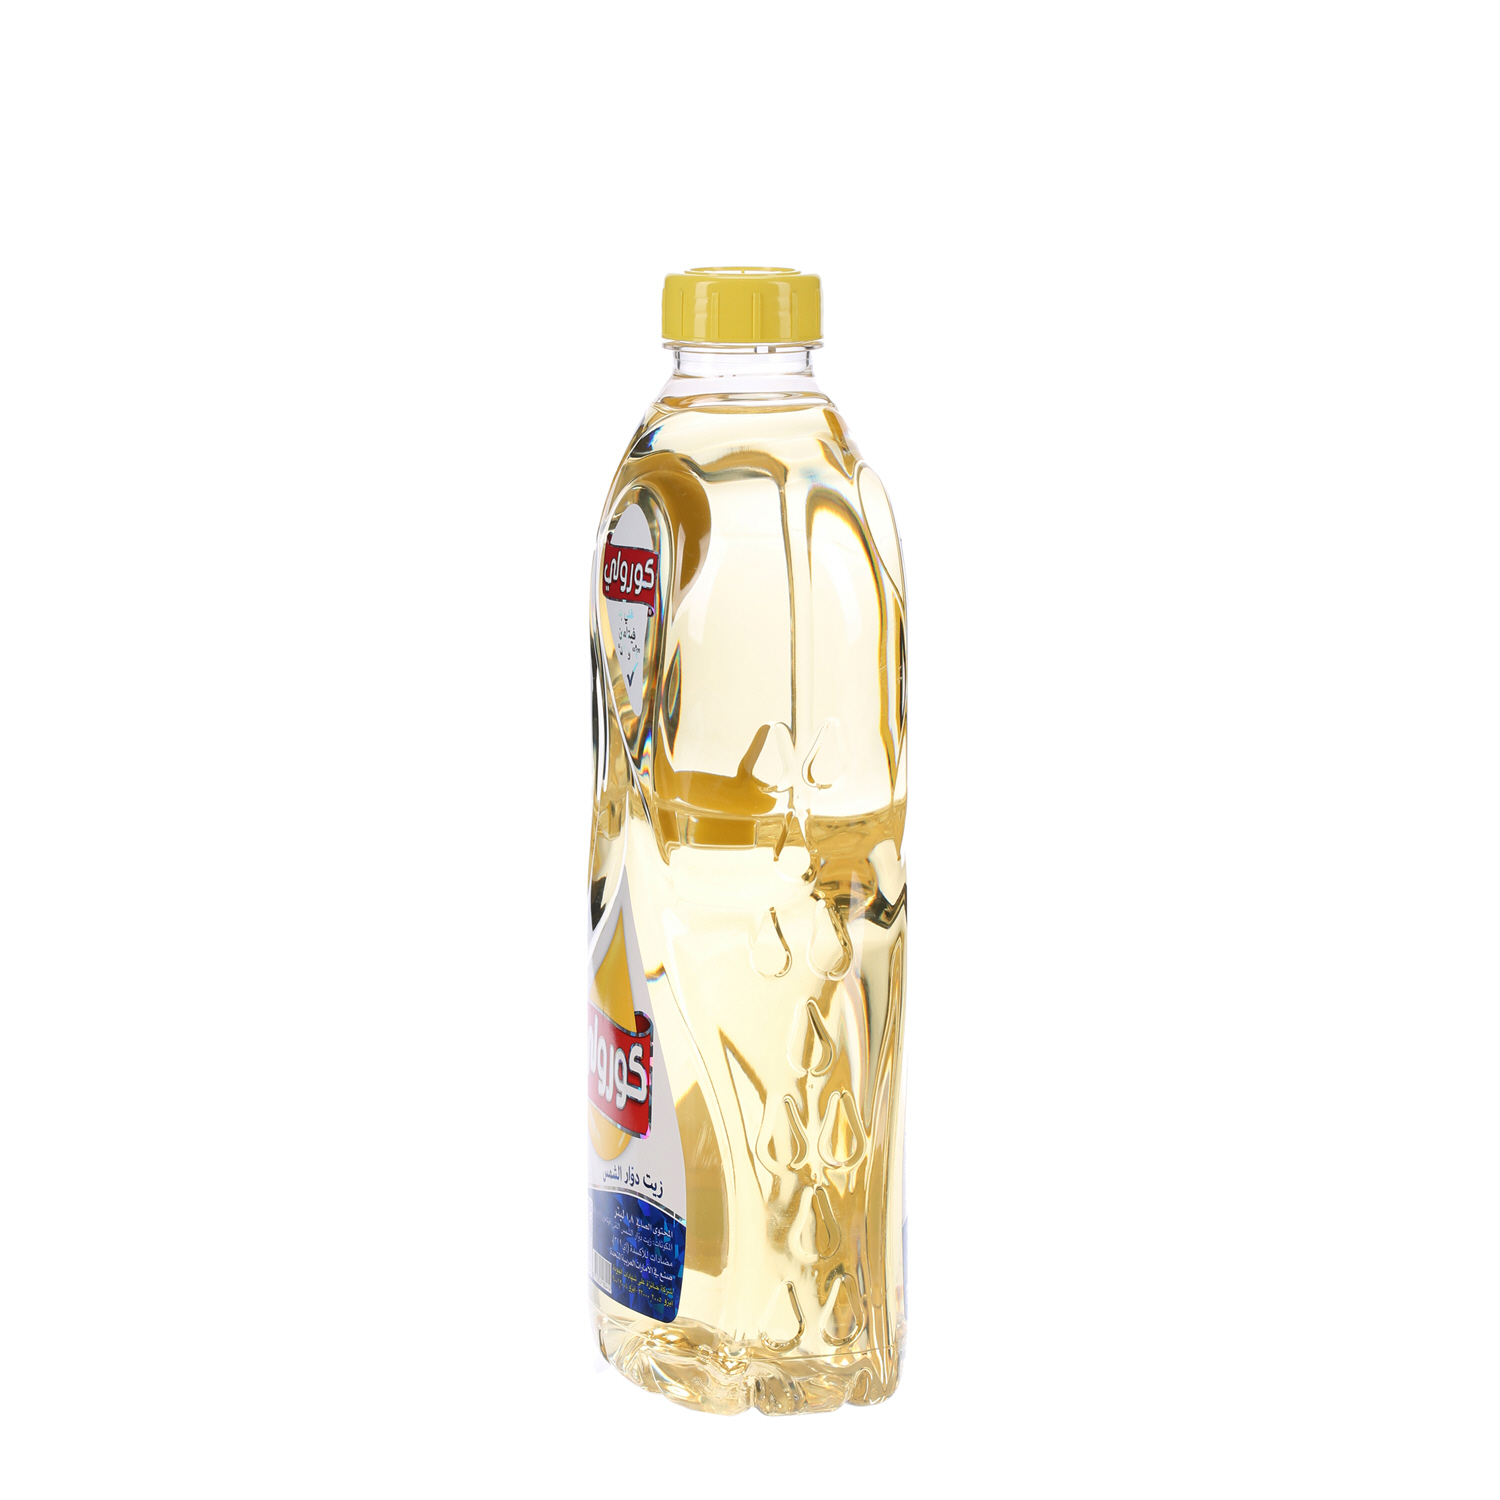 Coroli Sunflower Oil 1.8 L